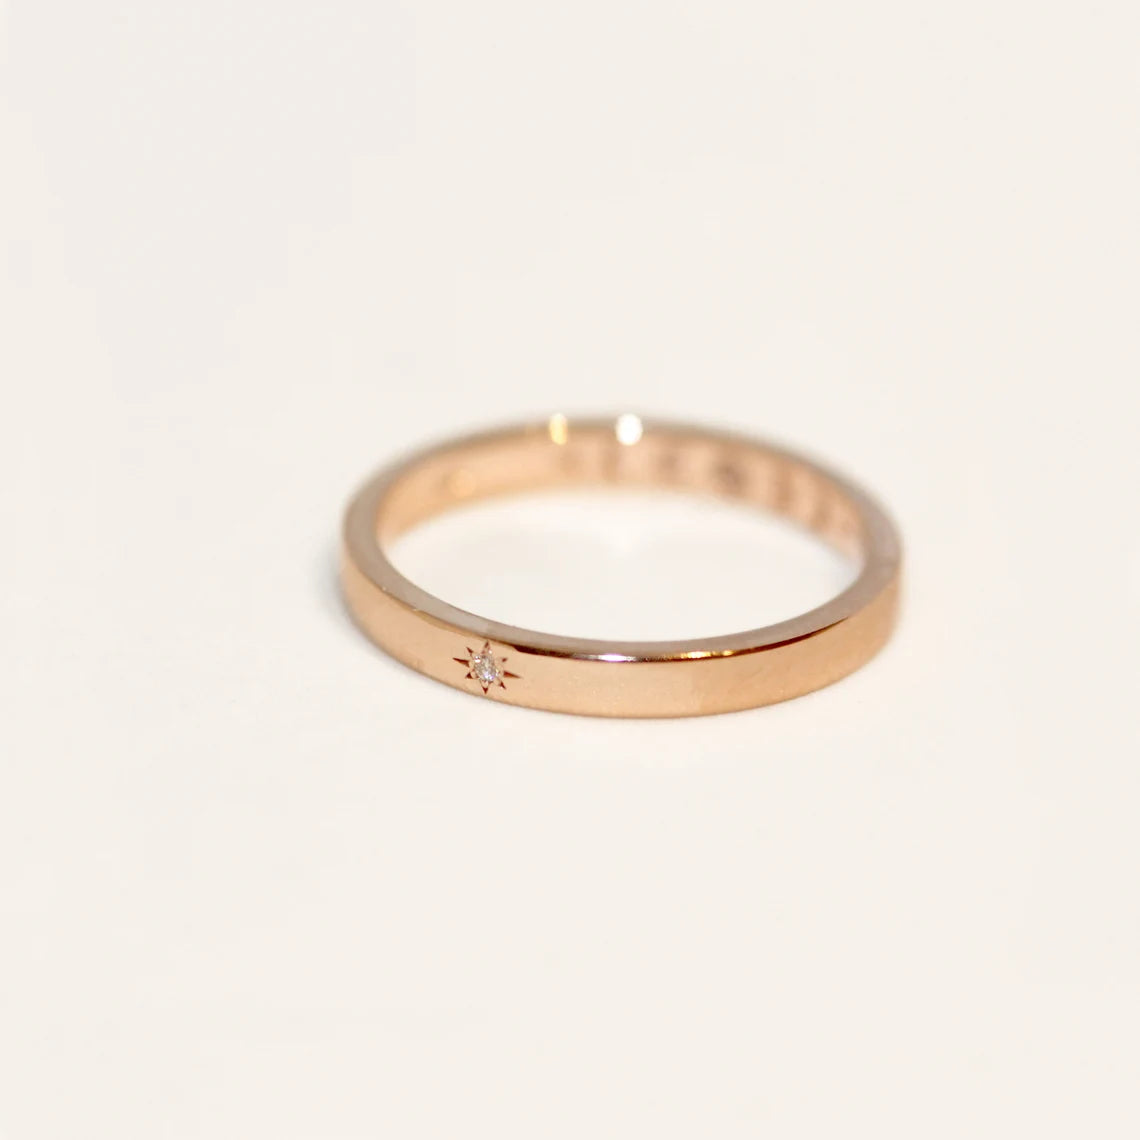 Custom Ring for Abigail Maller - 14k Diamond  with Moon Engraving Ring